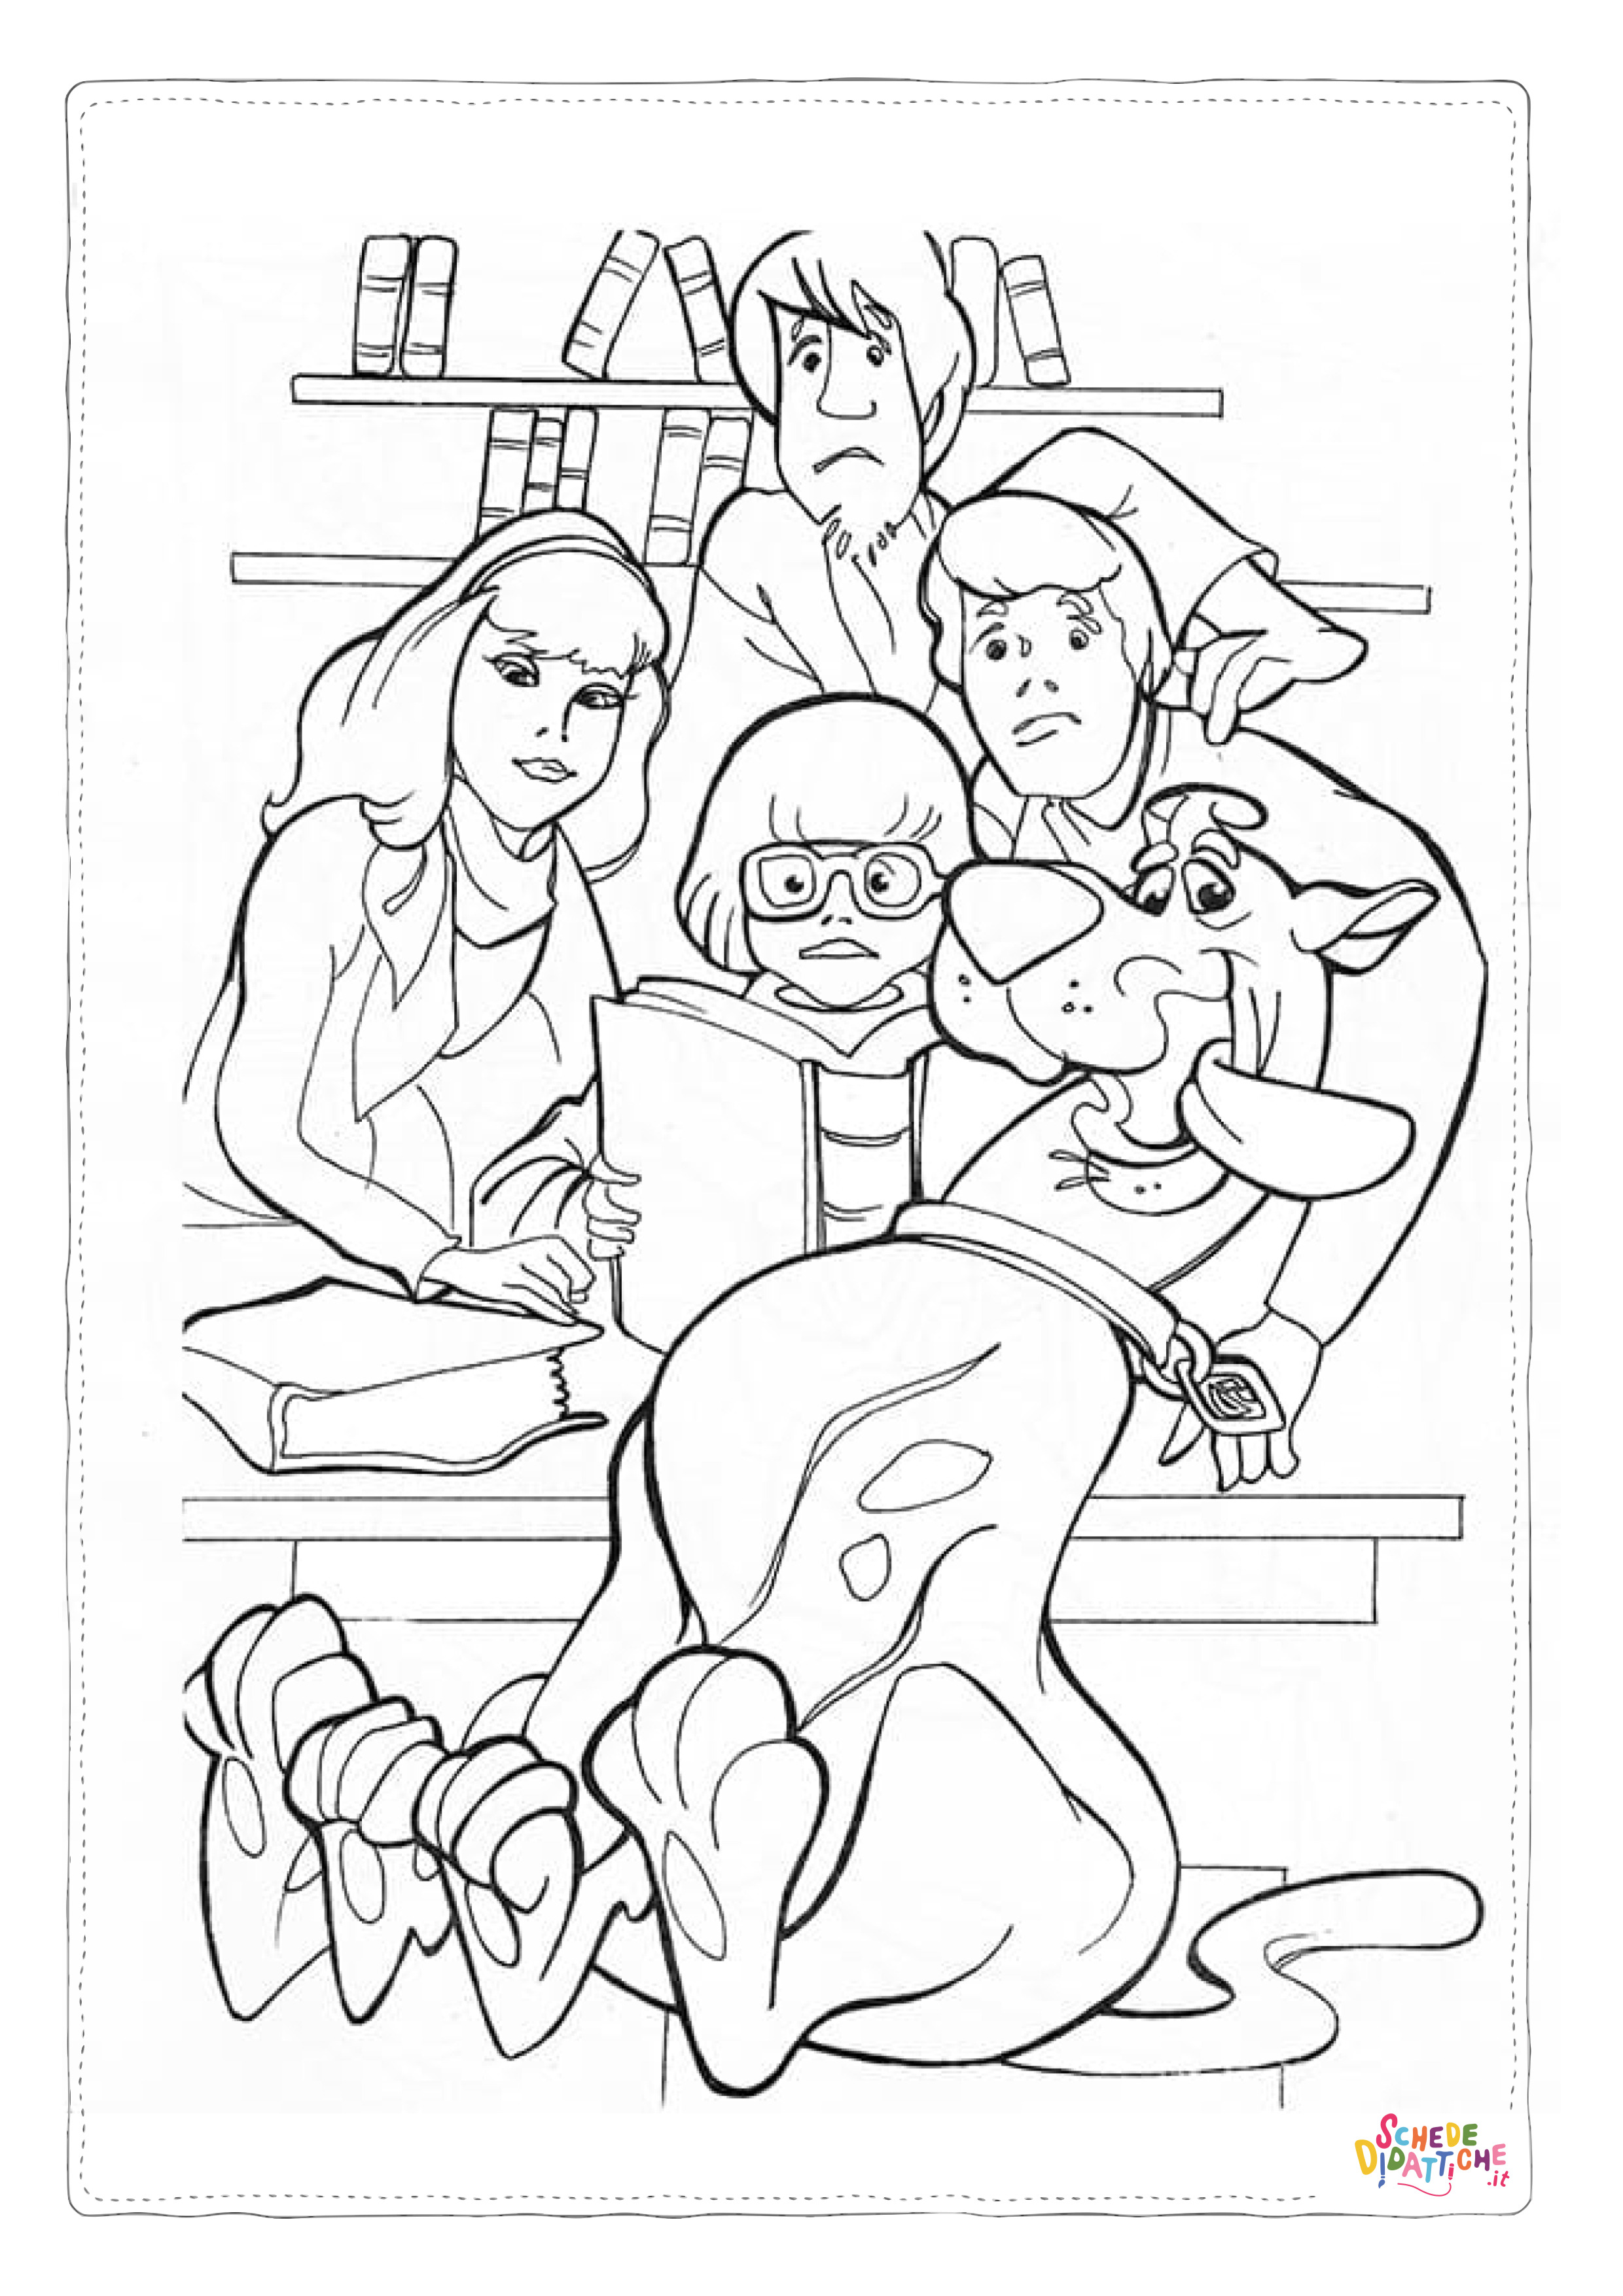 Disegno di Scooby Doo da stampare e colorare 135